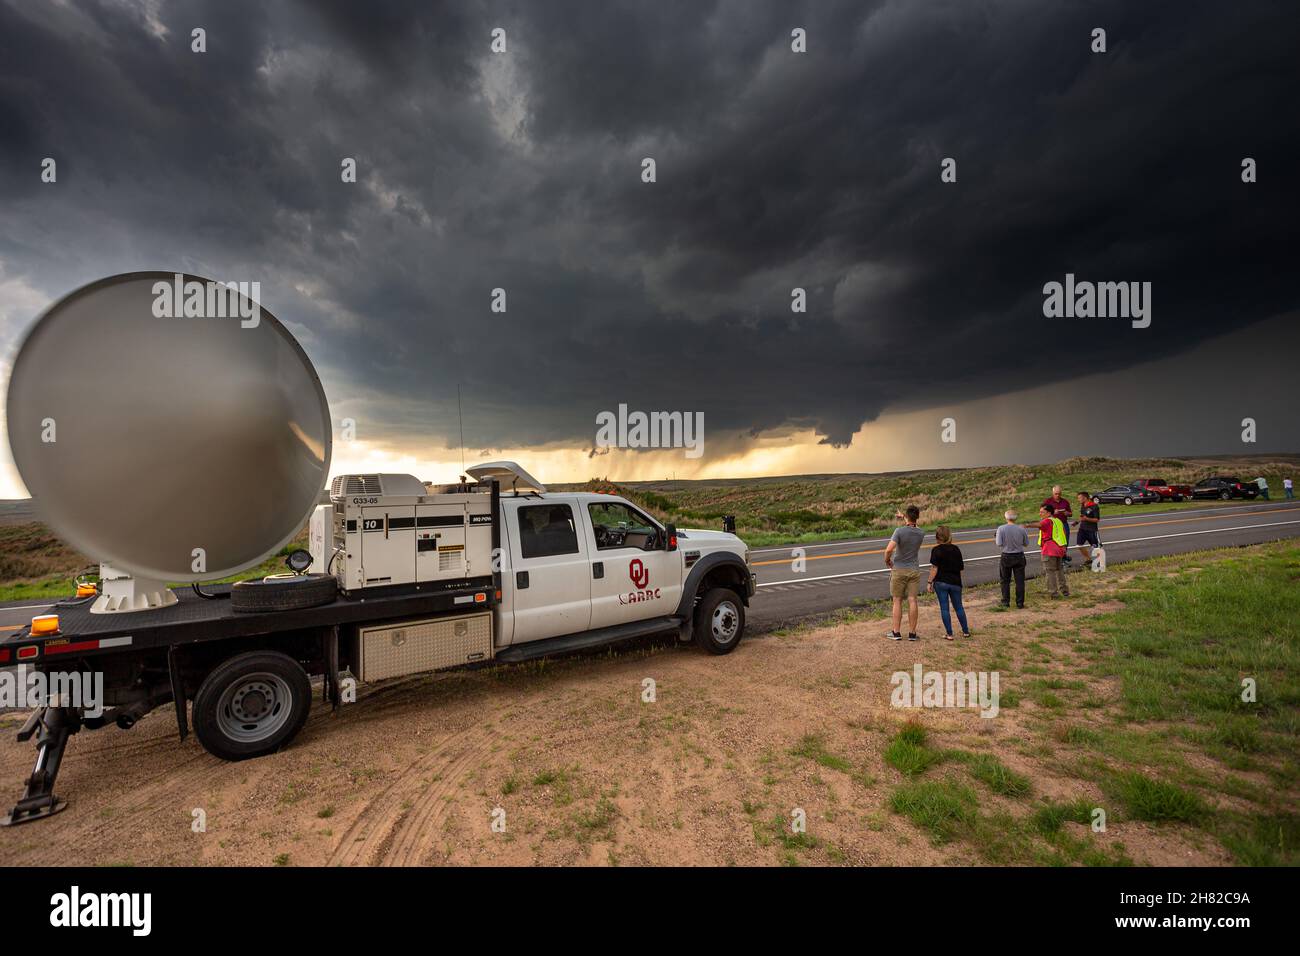 Des chercheurs de l'Université de l'Oklahoma examinent une tempête de supercellules à l'aide d'une unité radar mobile près de Freedom, Oklahoma, le 29 mai 2018. Banque D'Images